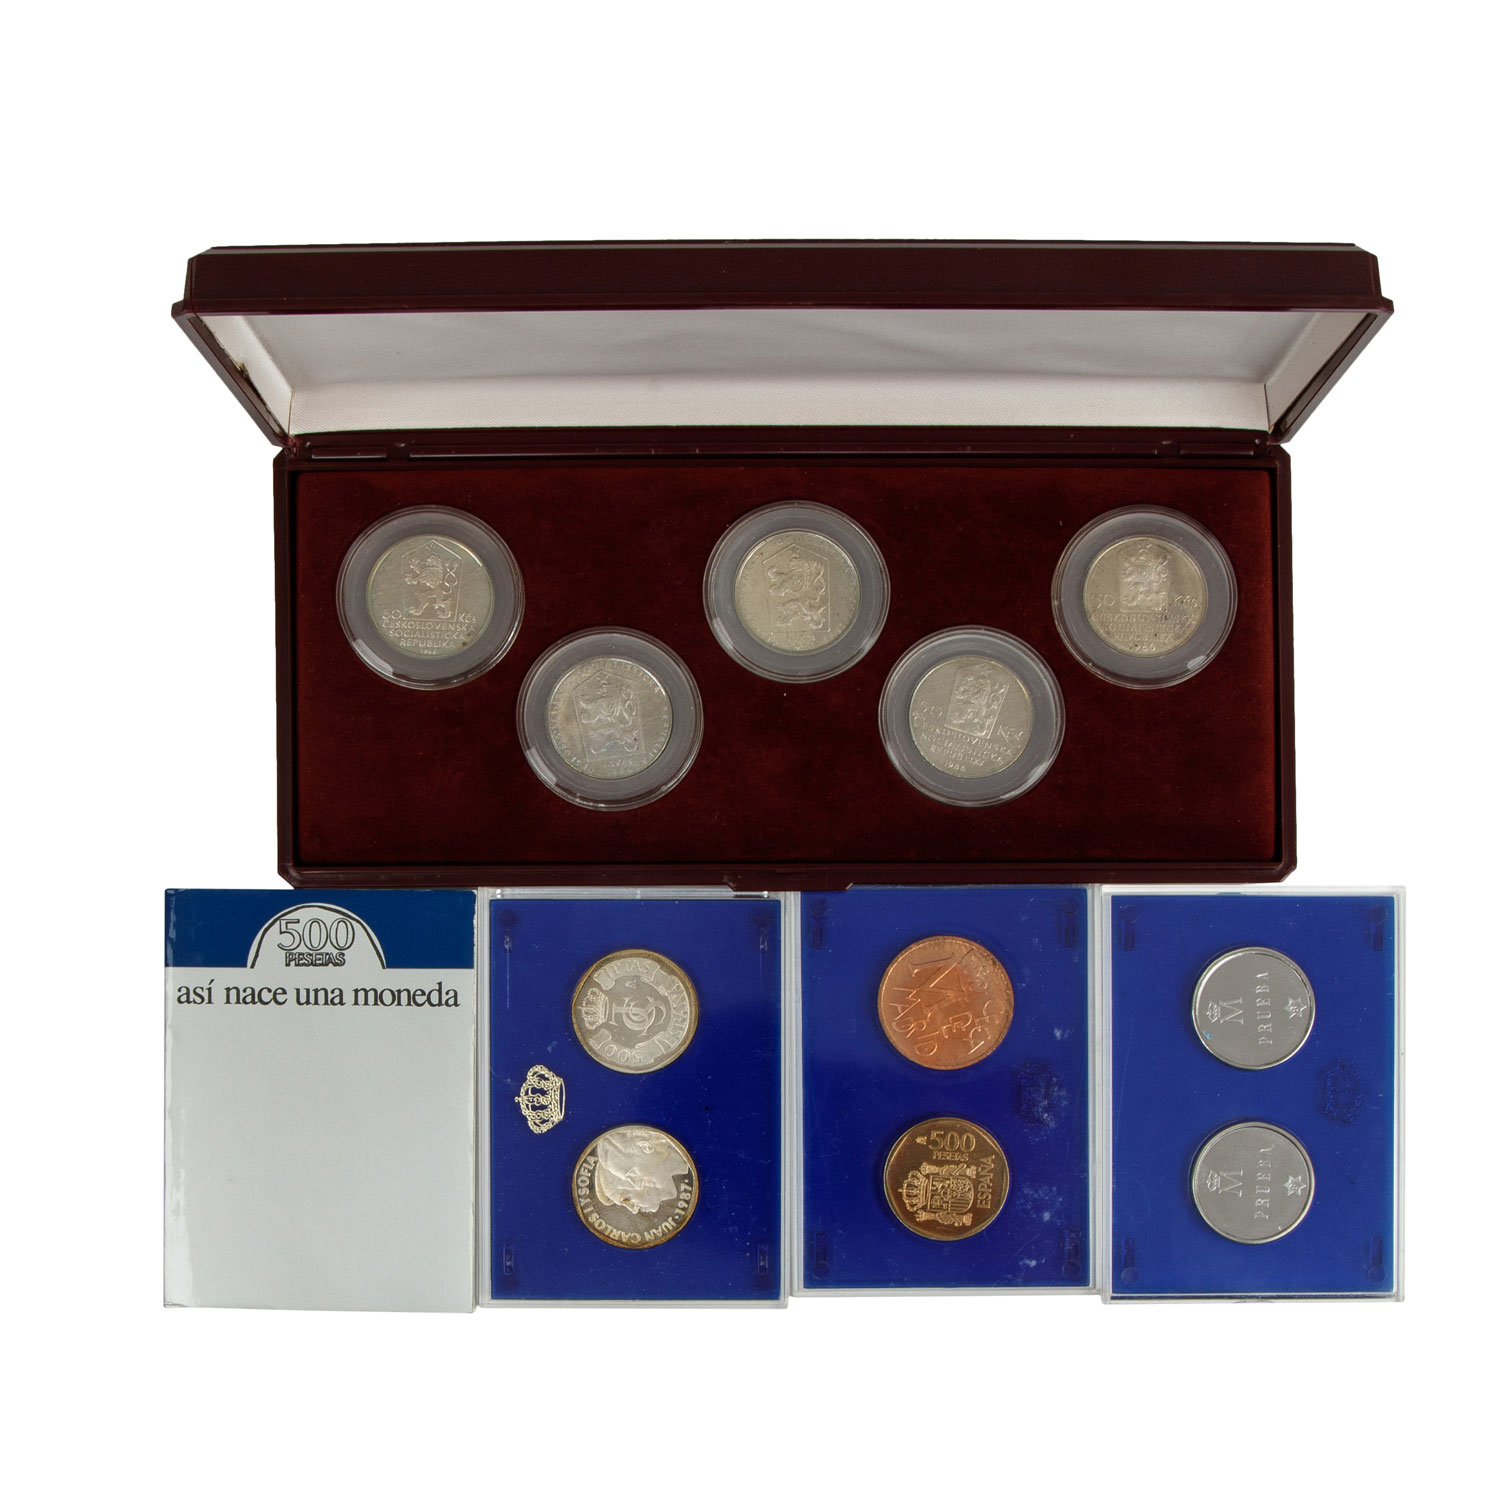 Gemischtes Gold- / Silber-Konvolut mit Münzen und Medaillen. - Image 3 of 4